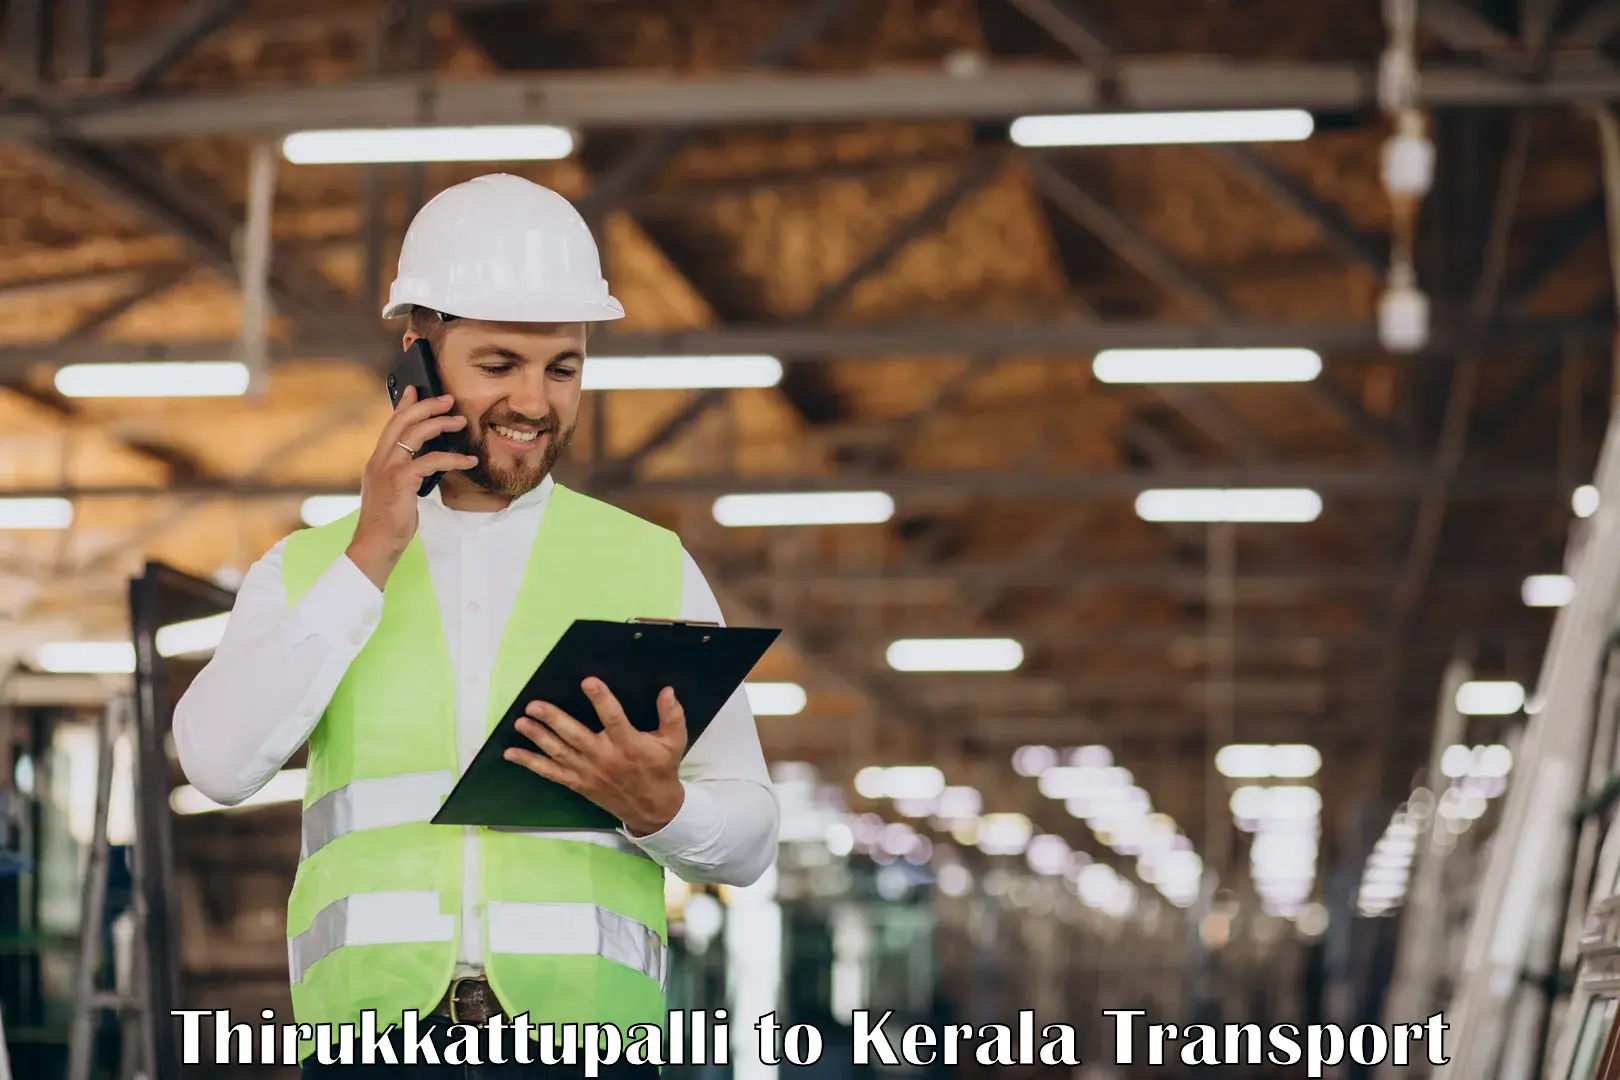 Nearest transport service Thirukkattupalli to Kalpetta